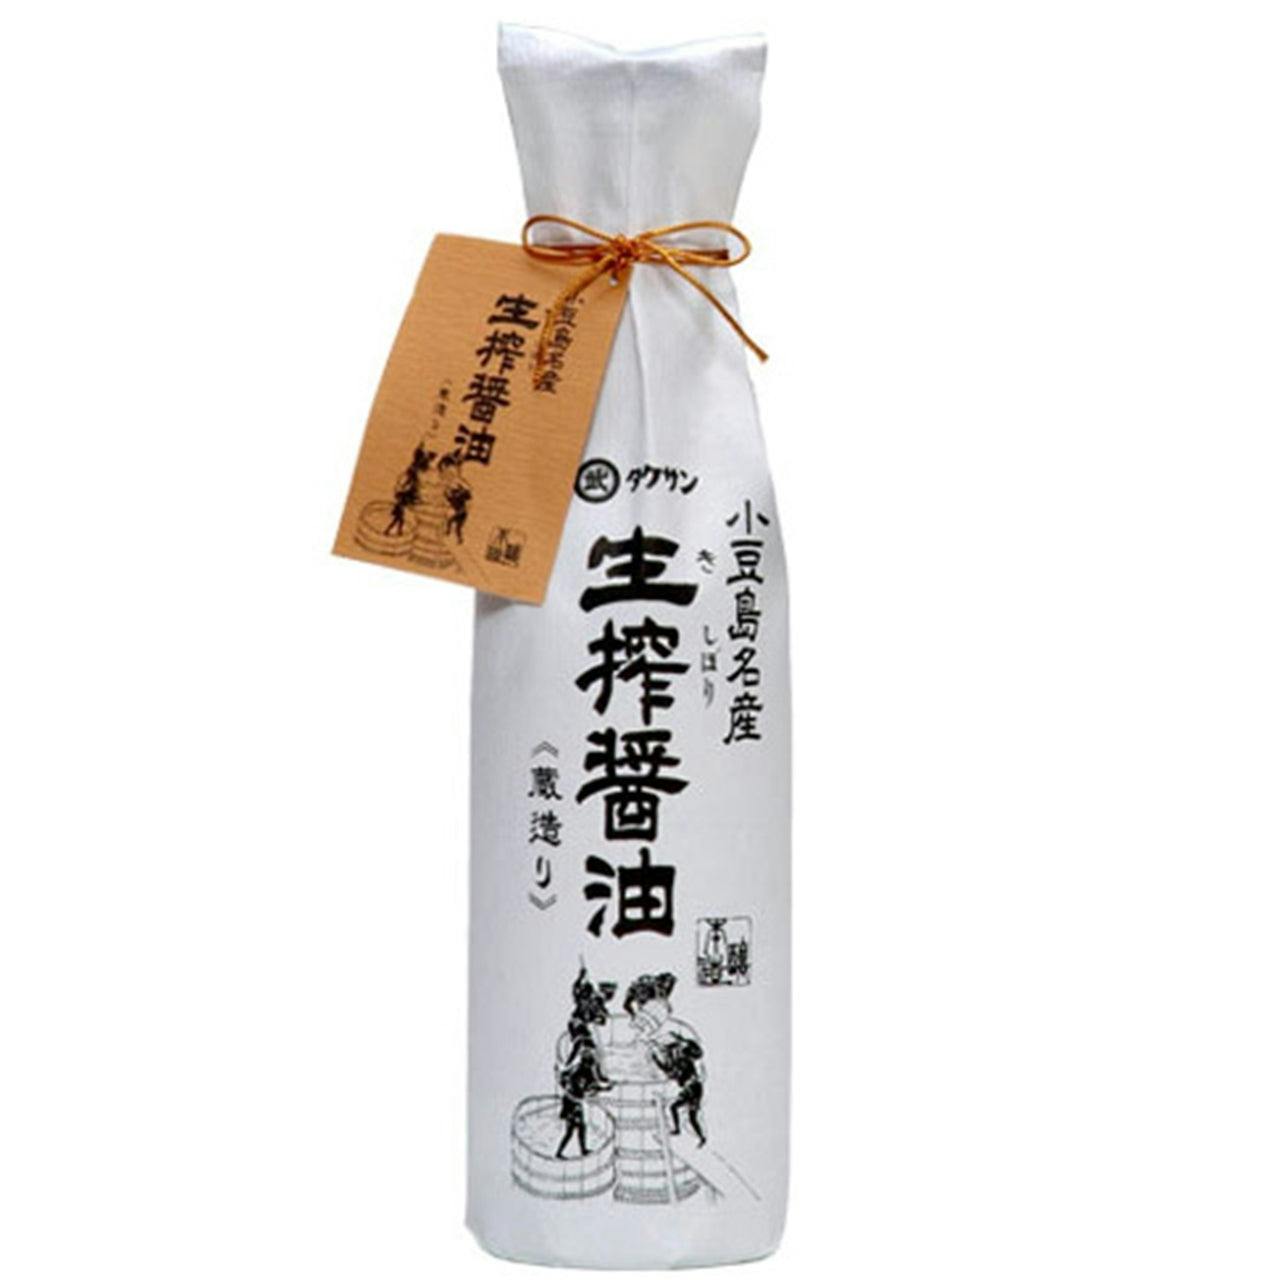 日本 岸保 纯手工 完全天然 初榨 顶级 酱油 无防腐剂无酒精  Kishibori Shoyu Premium Pure Artisan Soy Sauce (Unadulterated, No Preservatives) 24.3 fl oz / 720ml Pure artisan Japanese soy sauce. All natural barrel aged 1 year unadulterated and without preservatives